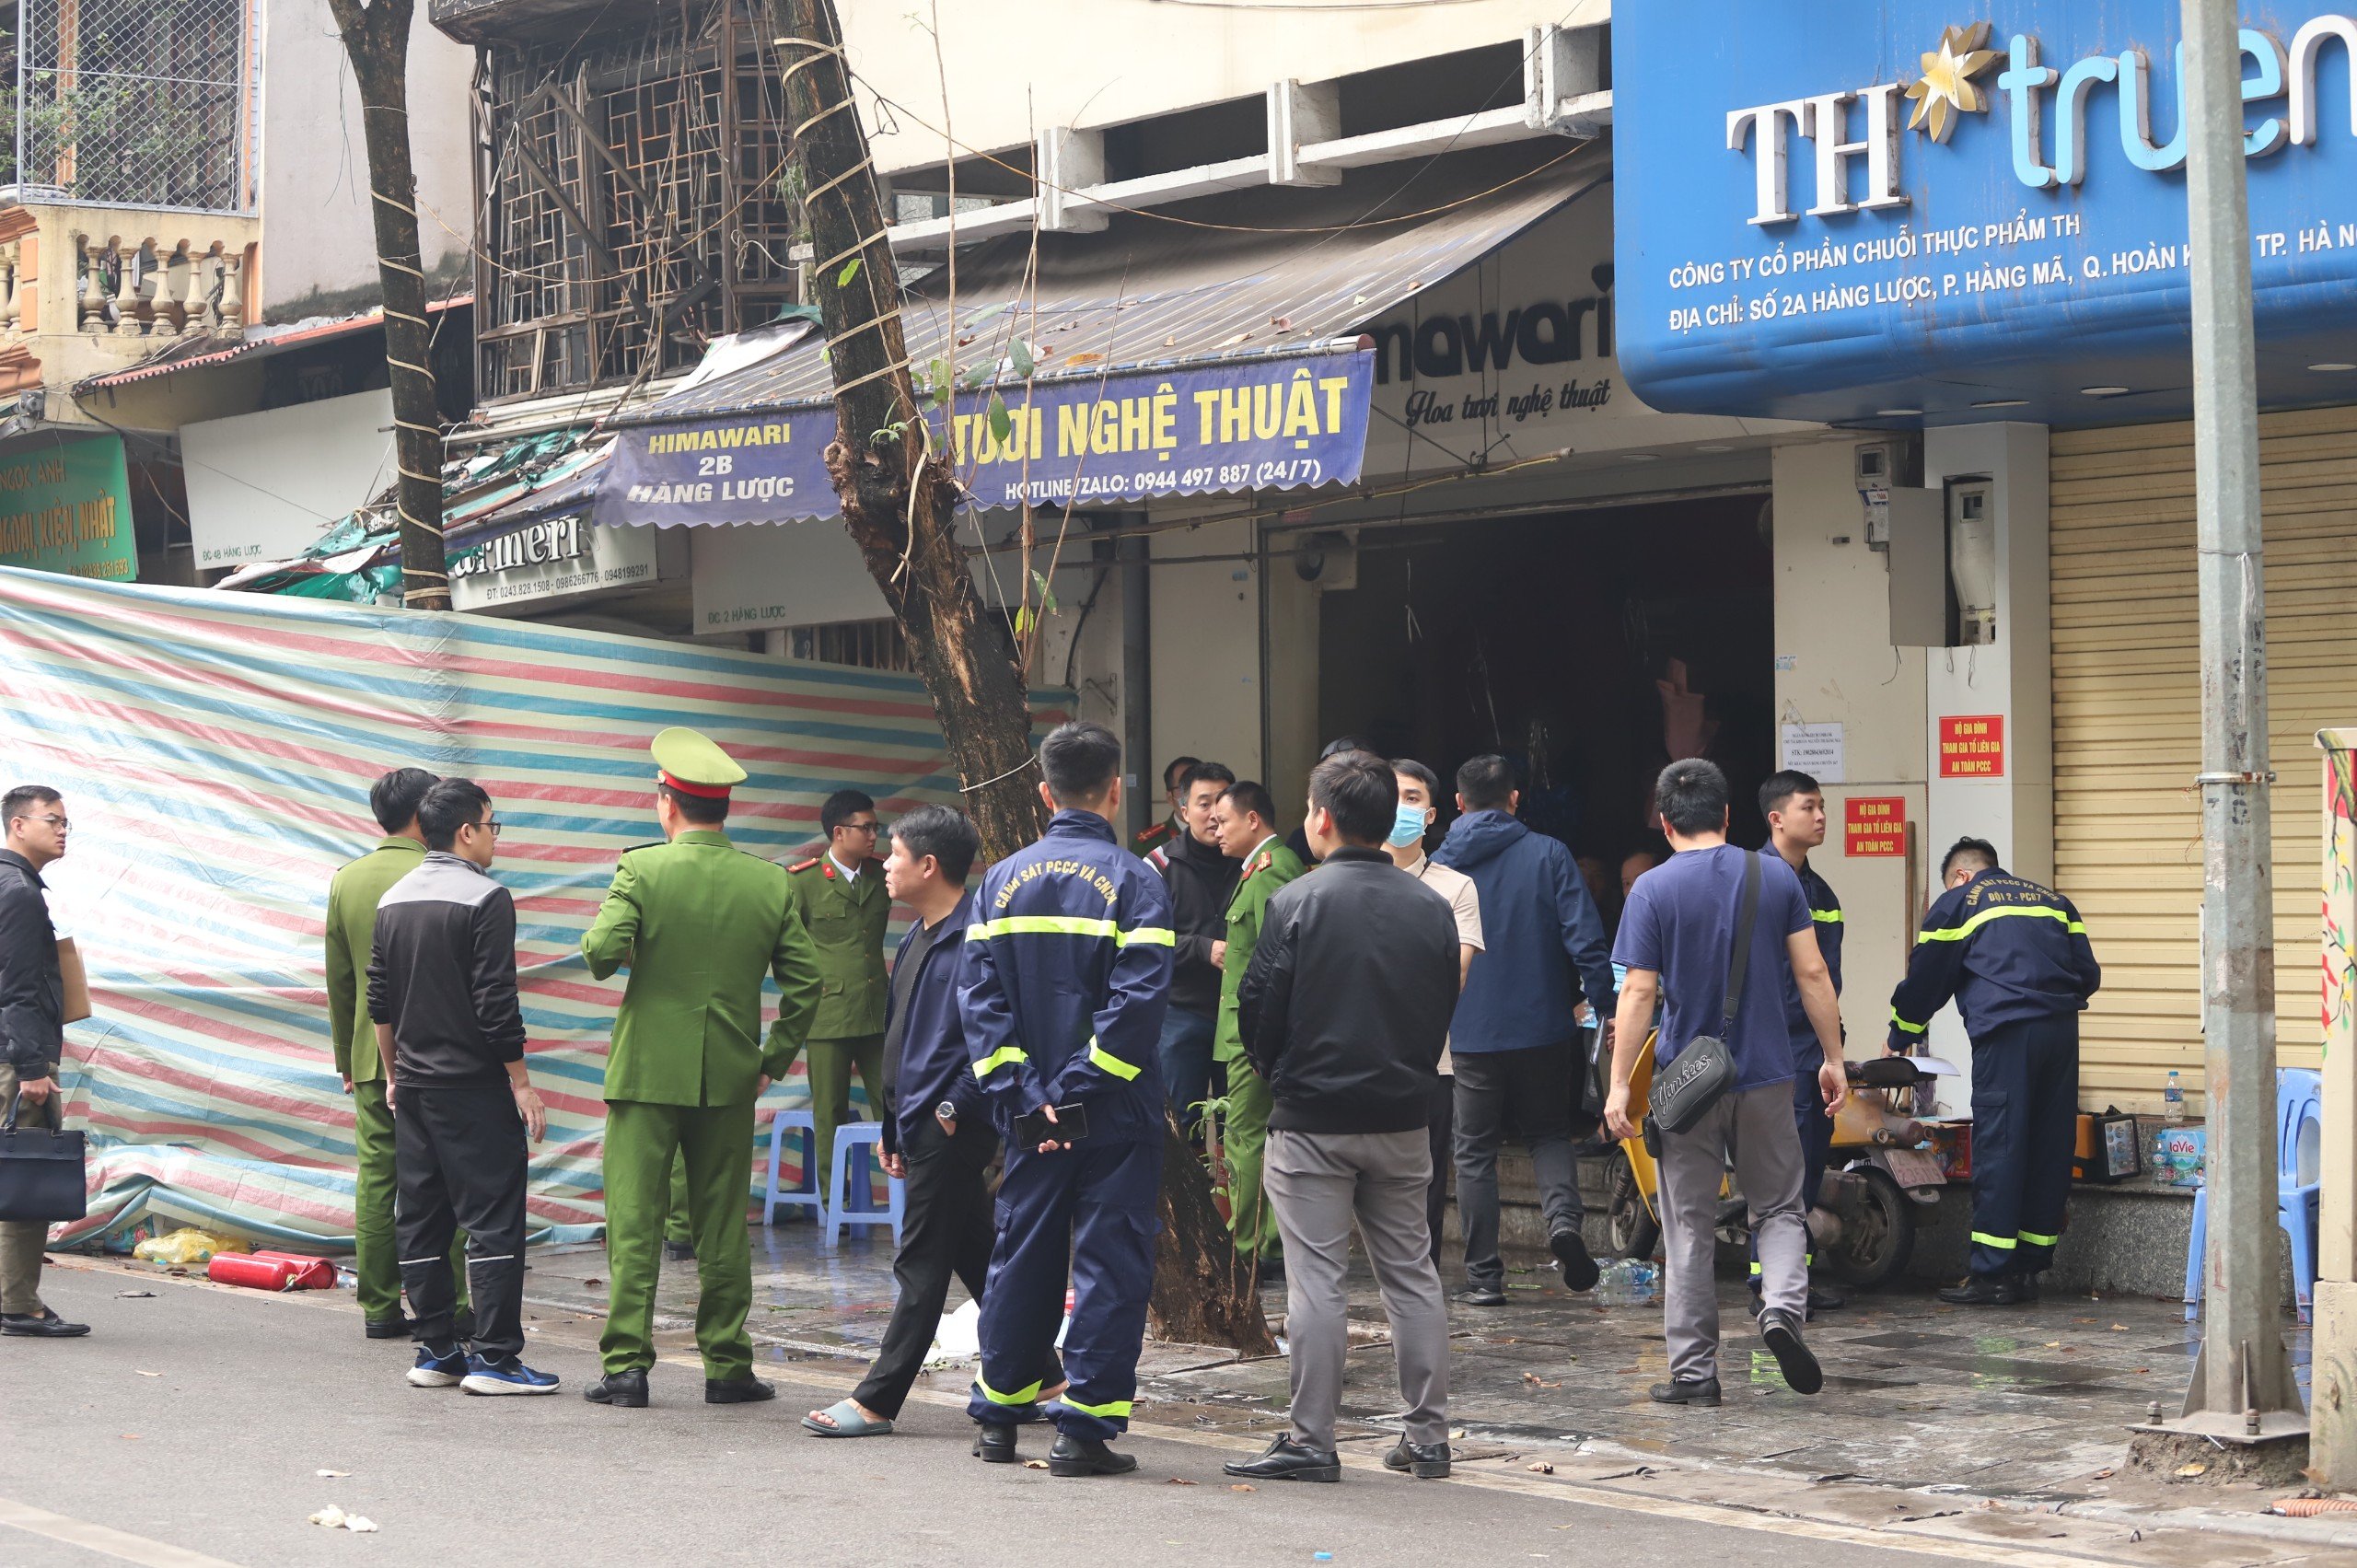 Tan hoang hiện trường vụ cháy khiến 4 người tử vong ở Hà Nội- Ảnh 2.